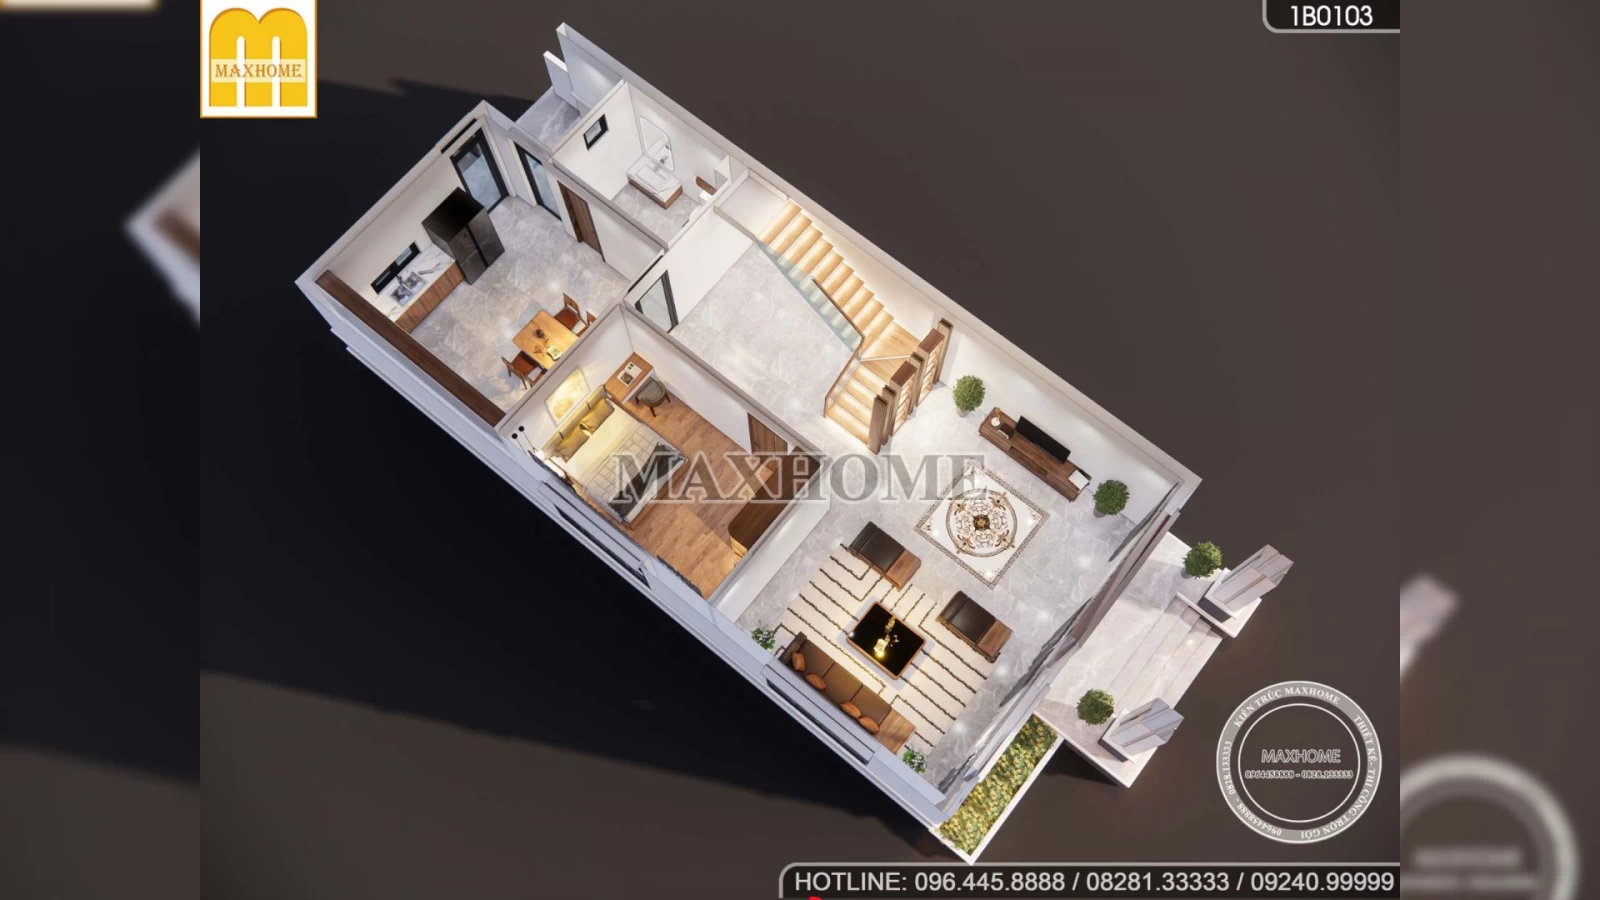 Bán bản vẽ mẫu thiết kế nhà 2 tầng mái Nhật ngói đỏ giá rẻ | MH03042